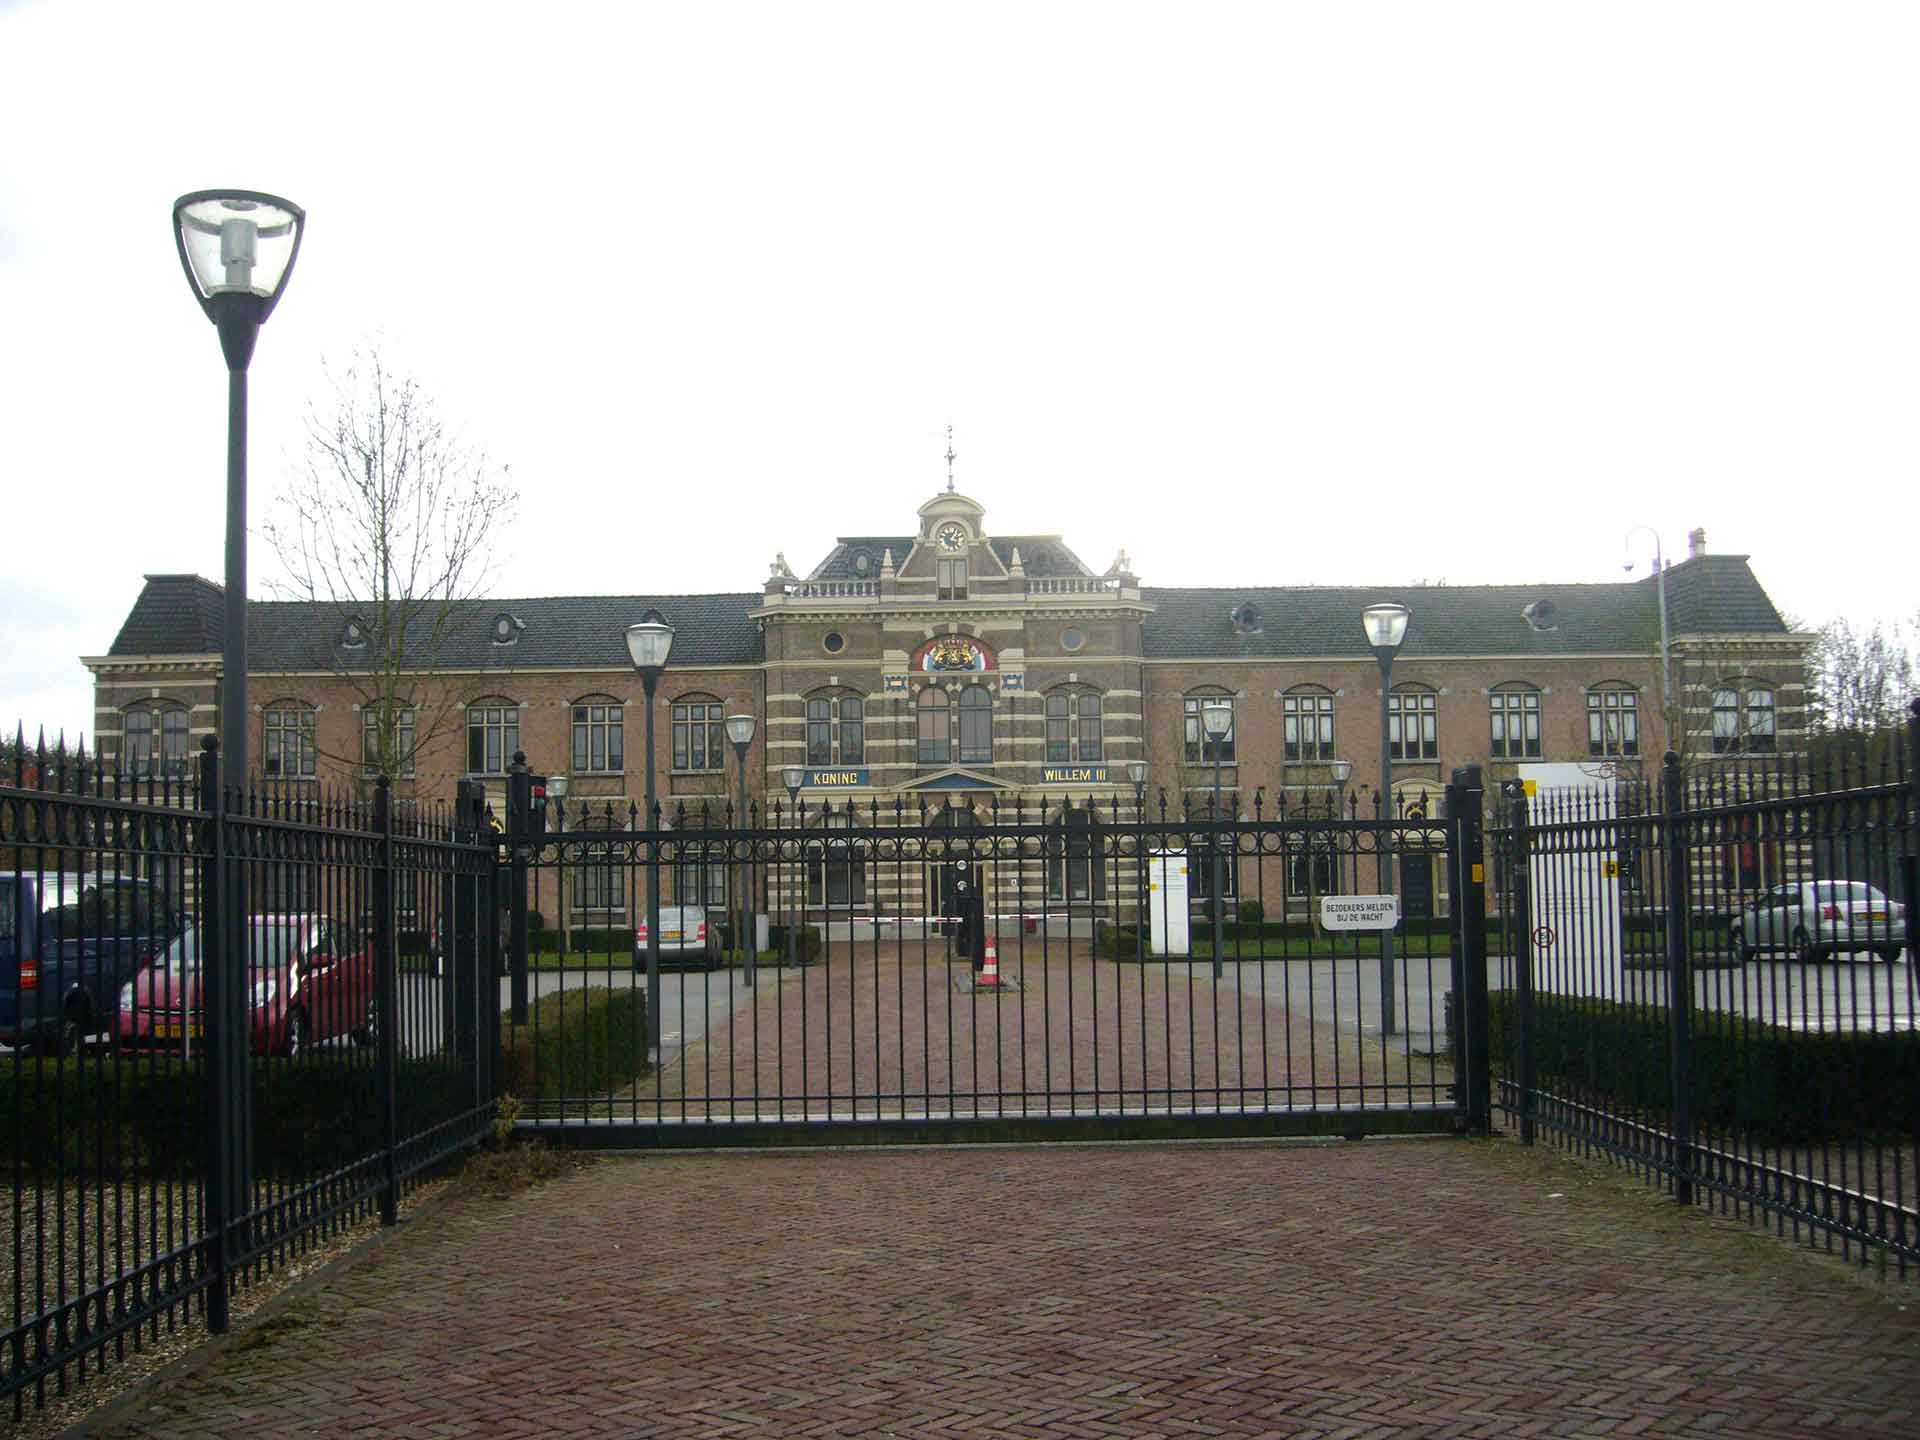 Institución Penitenciaria PI Utrecht Nieuwersluis - Weening Abogados Penalistas